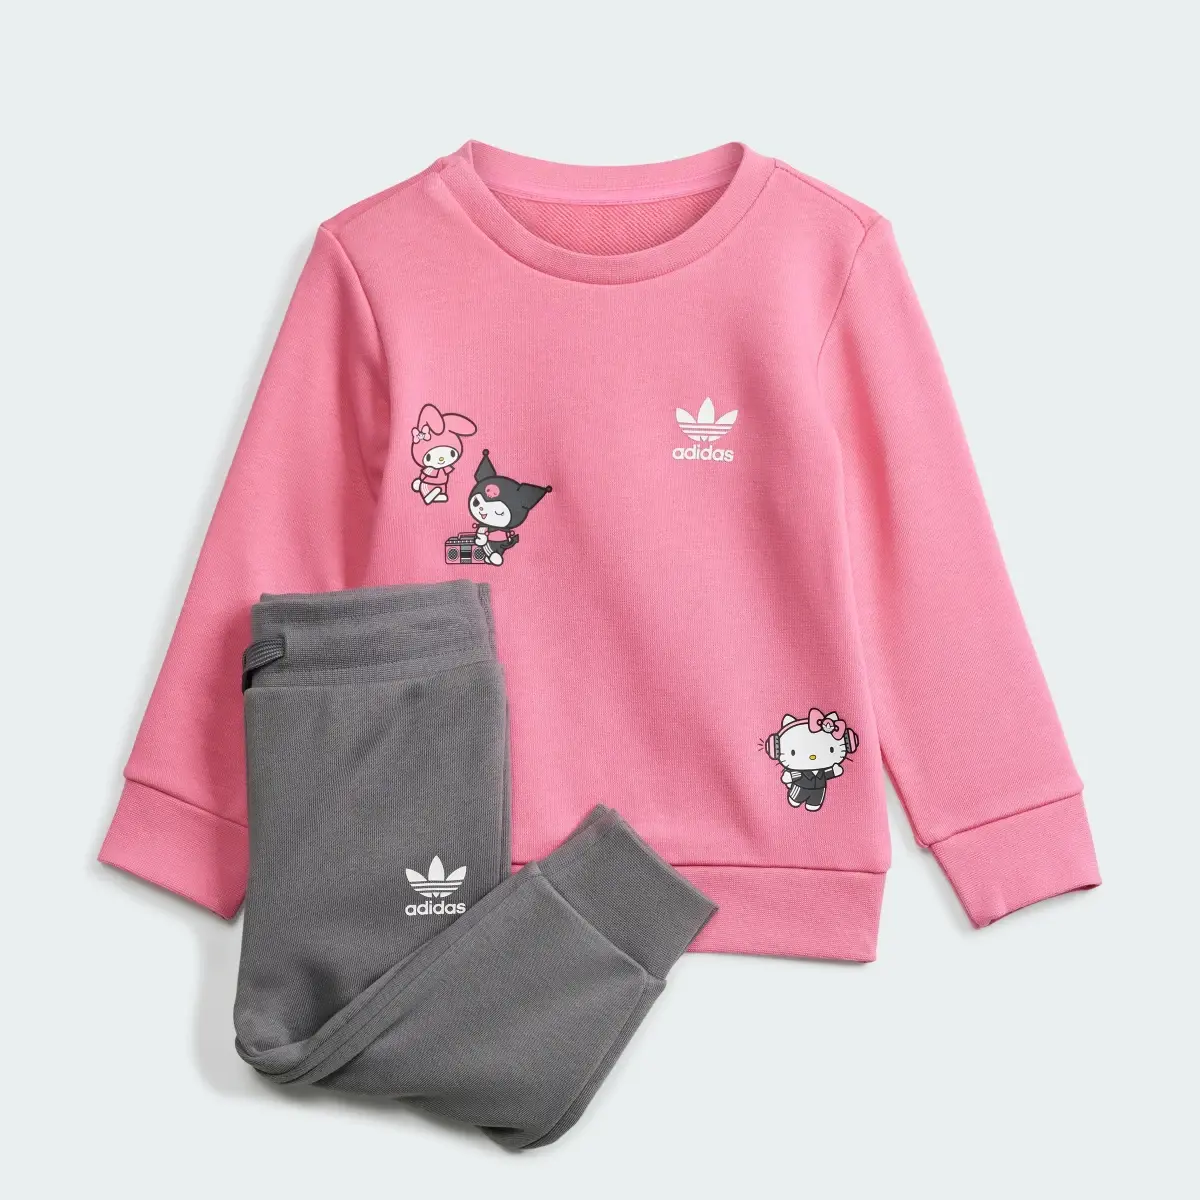 Adidas Originals x Hello Kitty Eşofman Takımı. 1